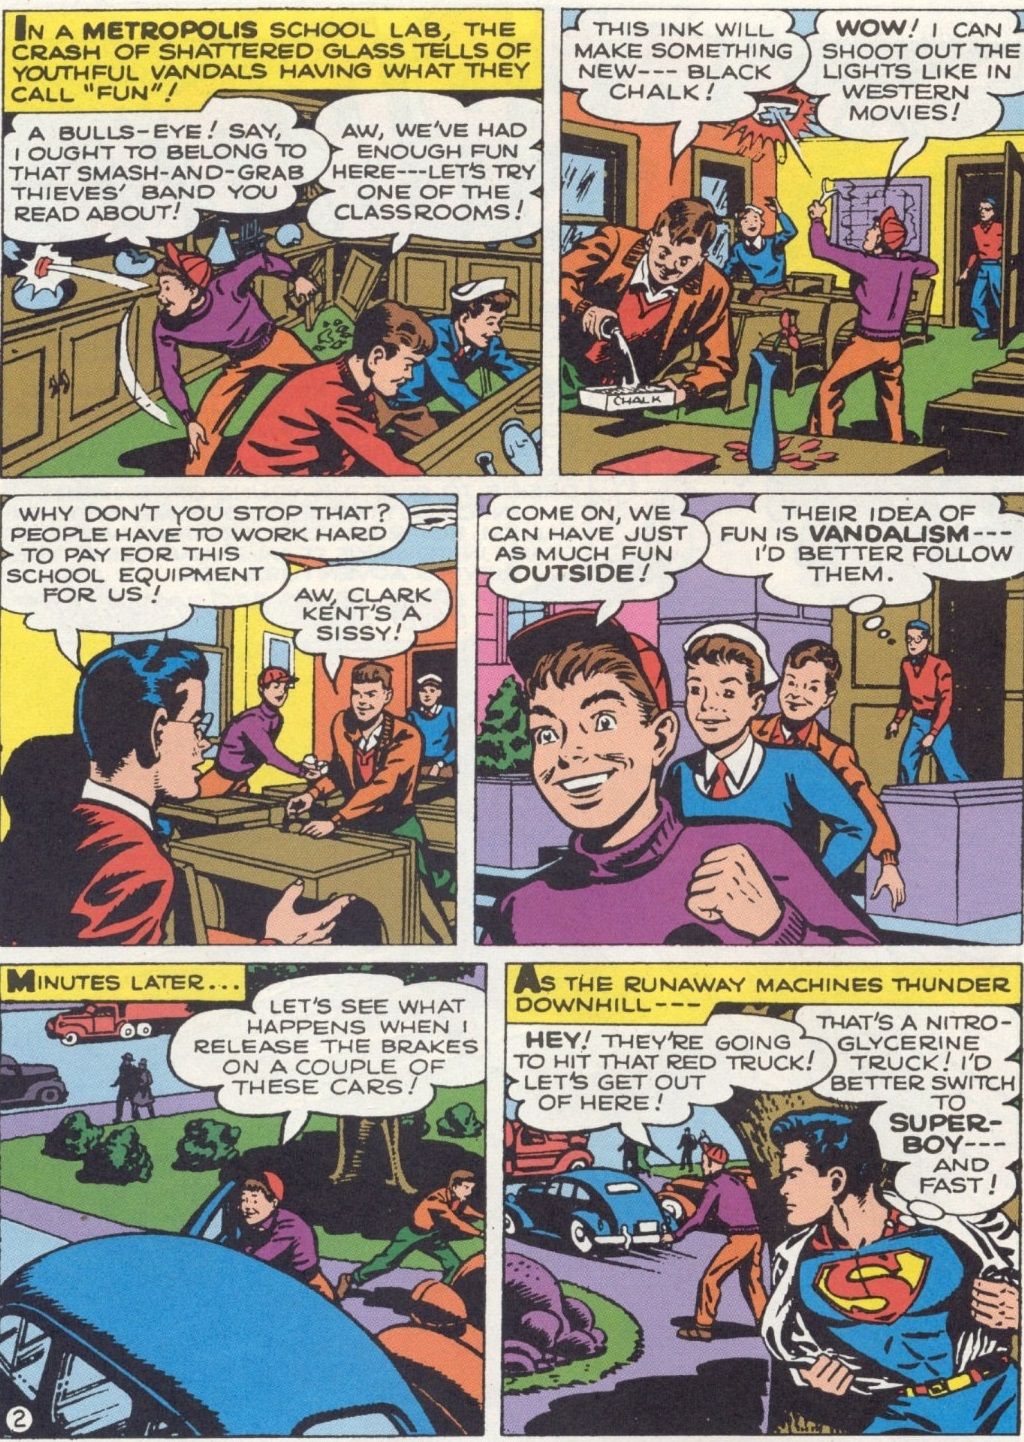 Superboy grew up in Metropolis